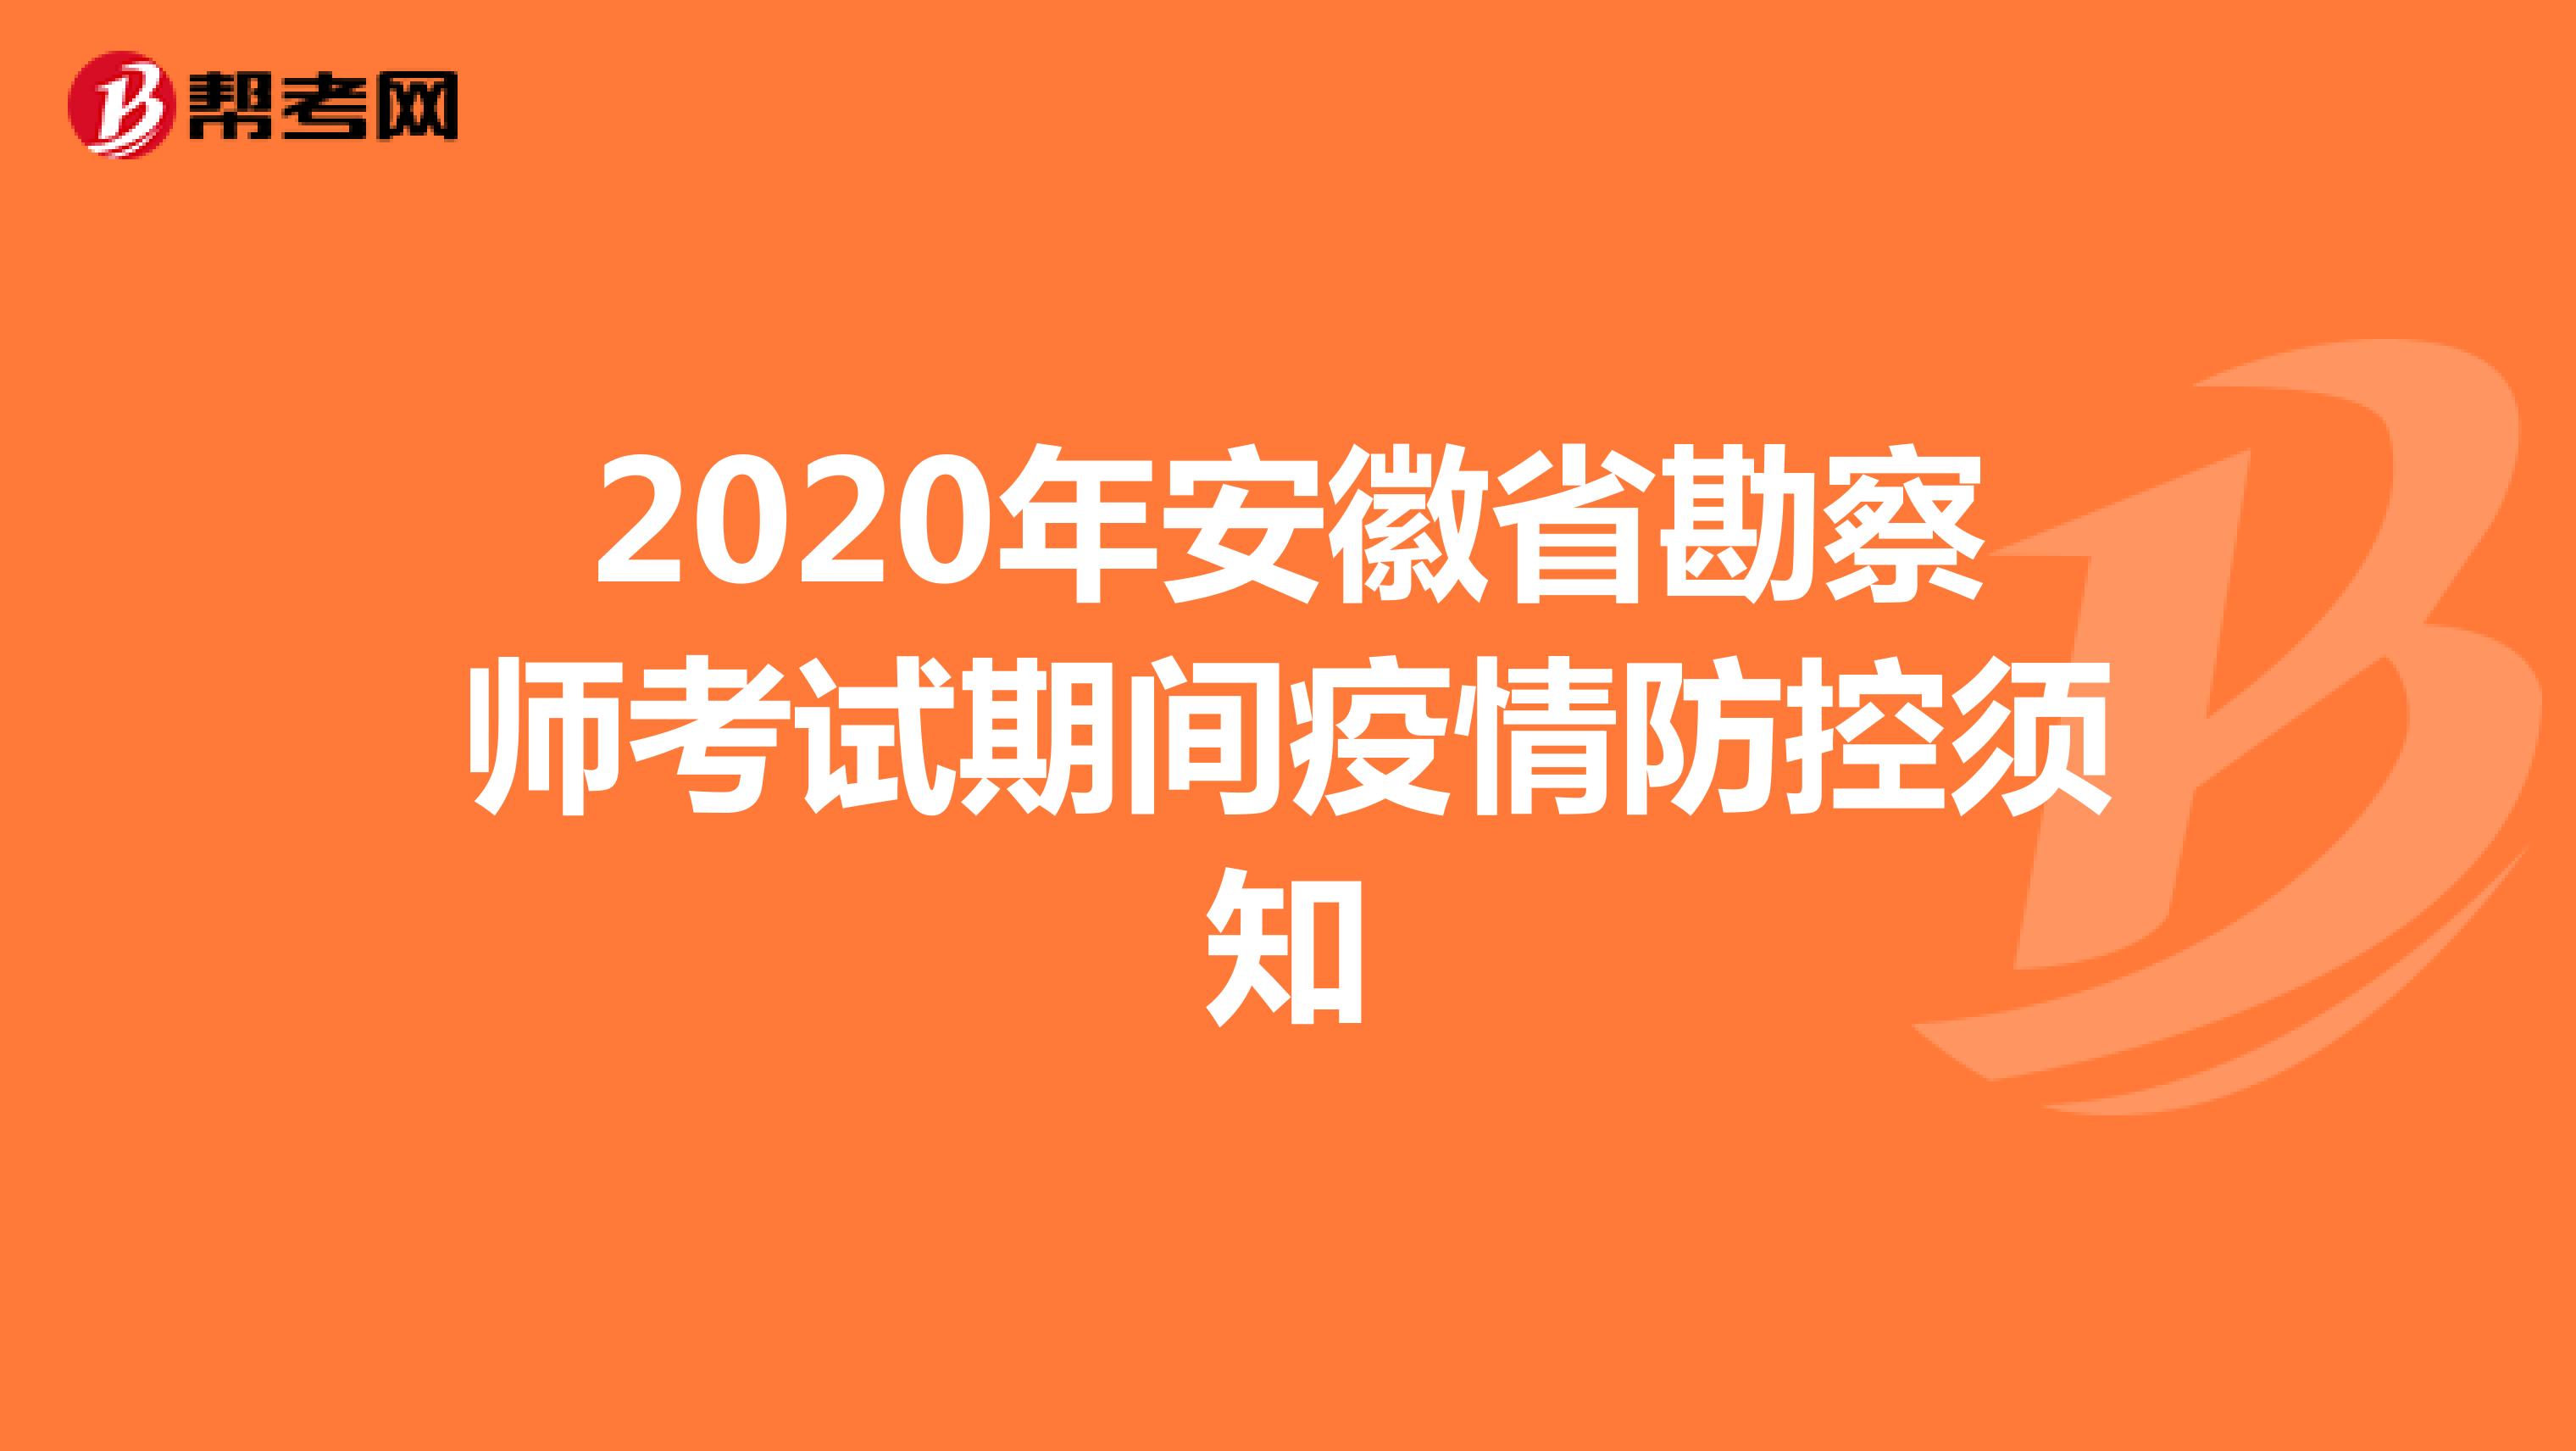 2020年安徽省勘察师考试期间疫情防控须知